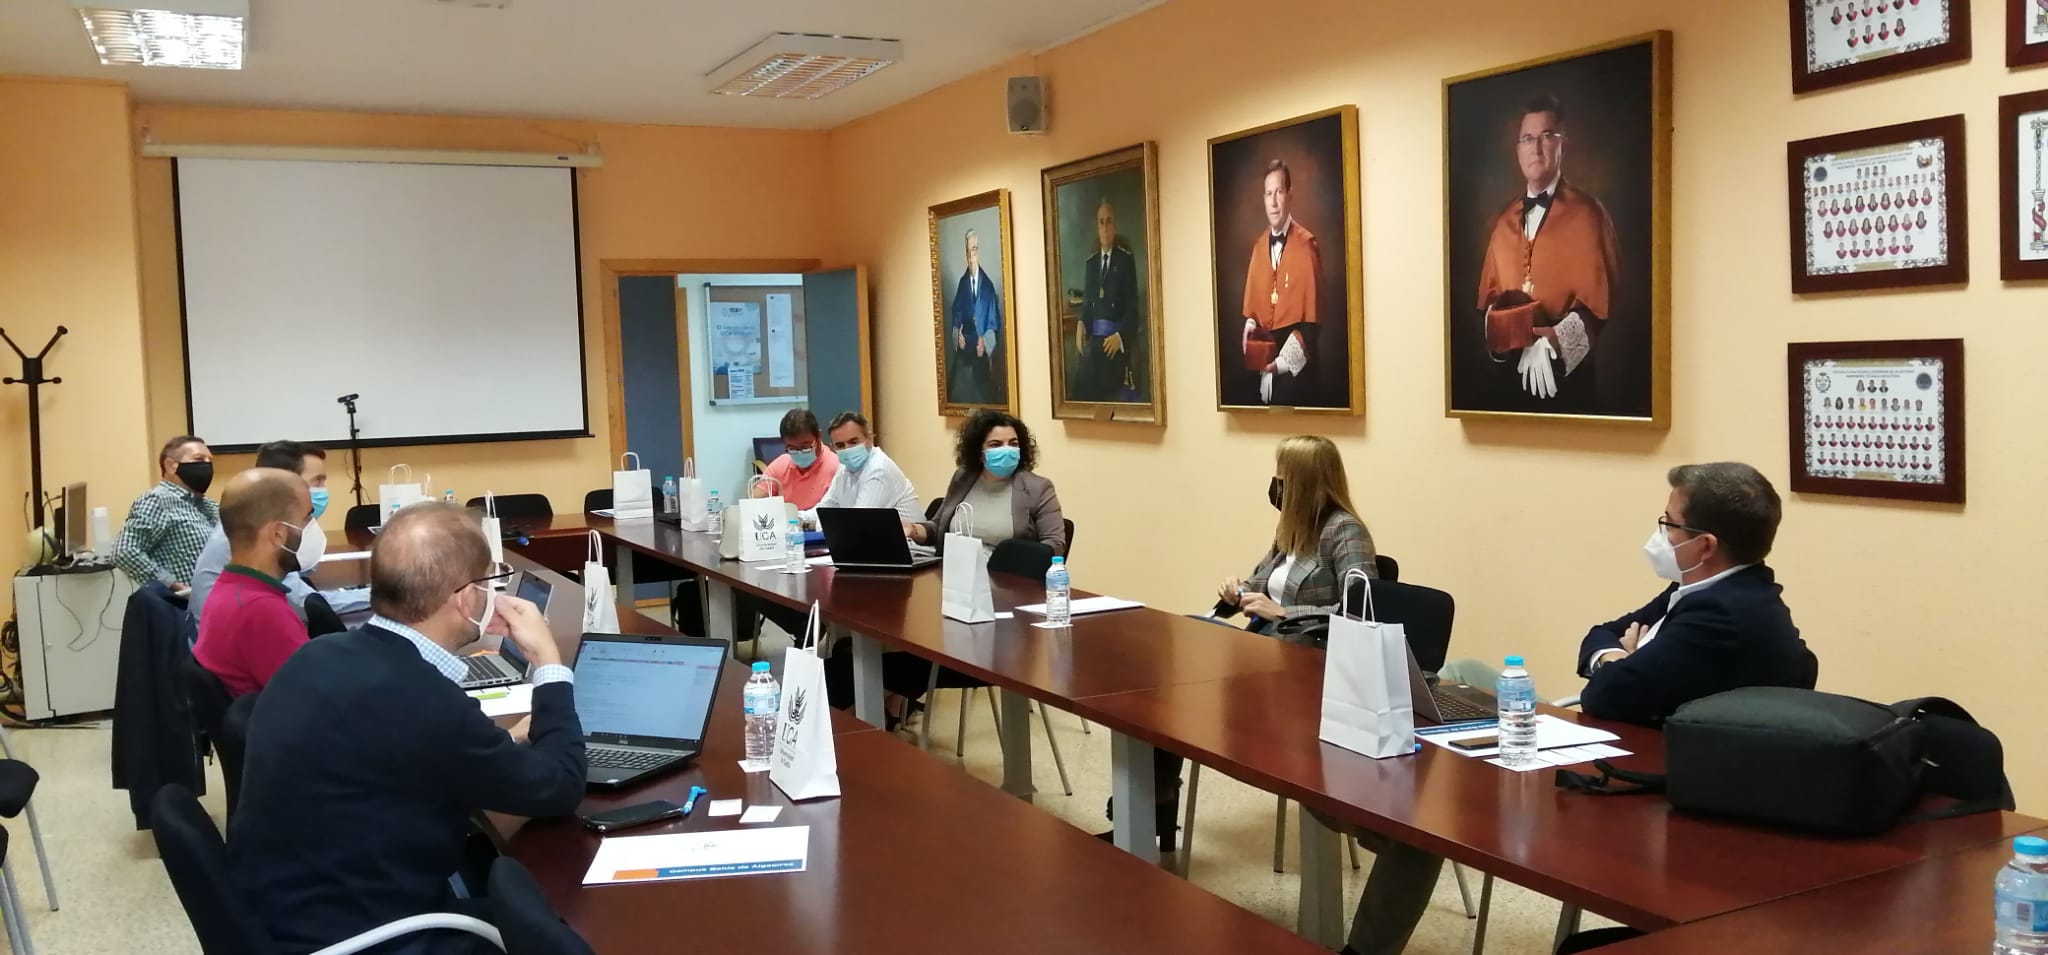 El Campus Bahía de Algeciras acoge una reunión con el grupo de trabajo CIL 4.0 de la Agencia Idea